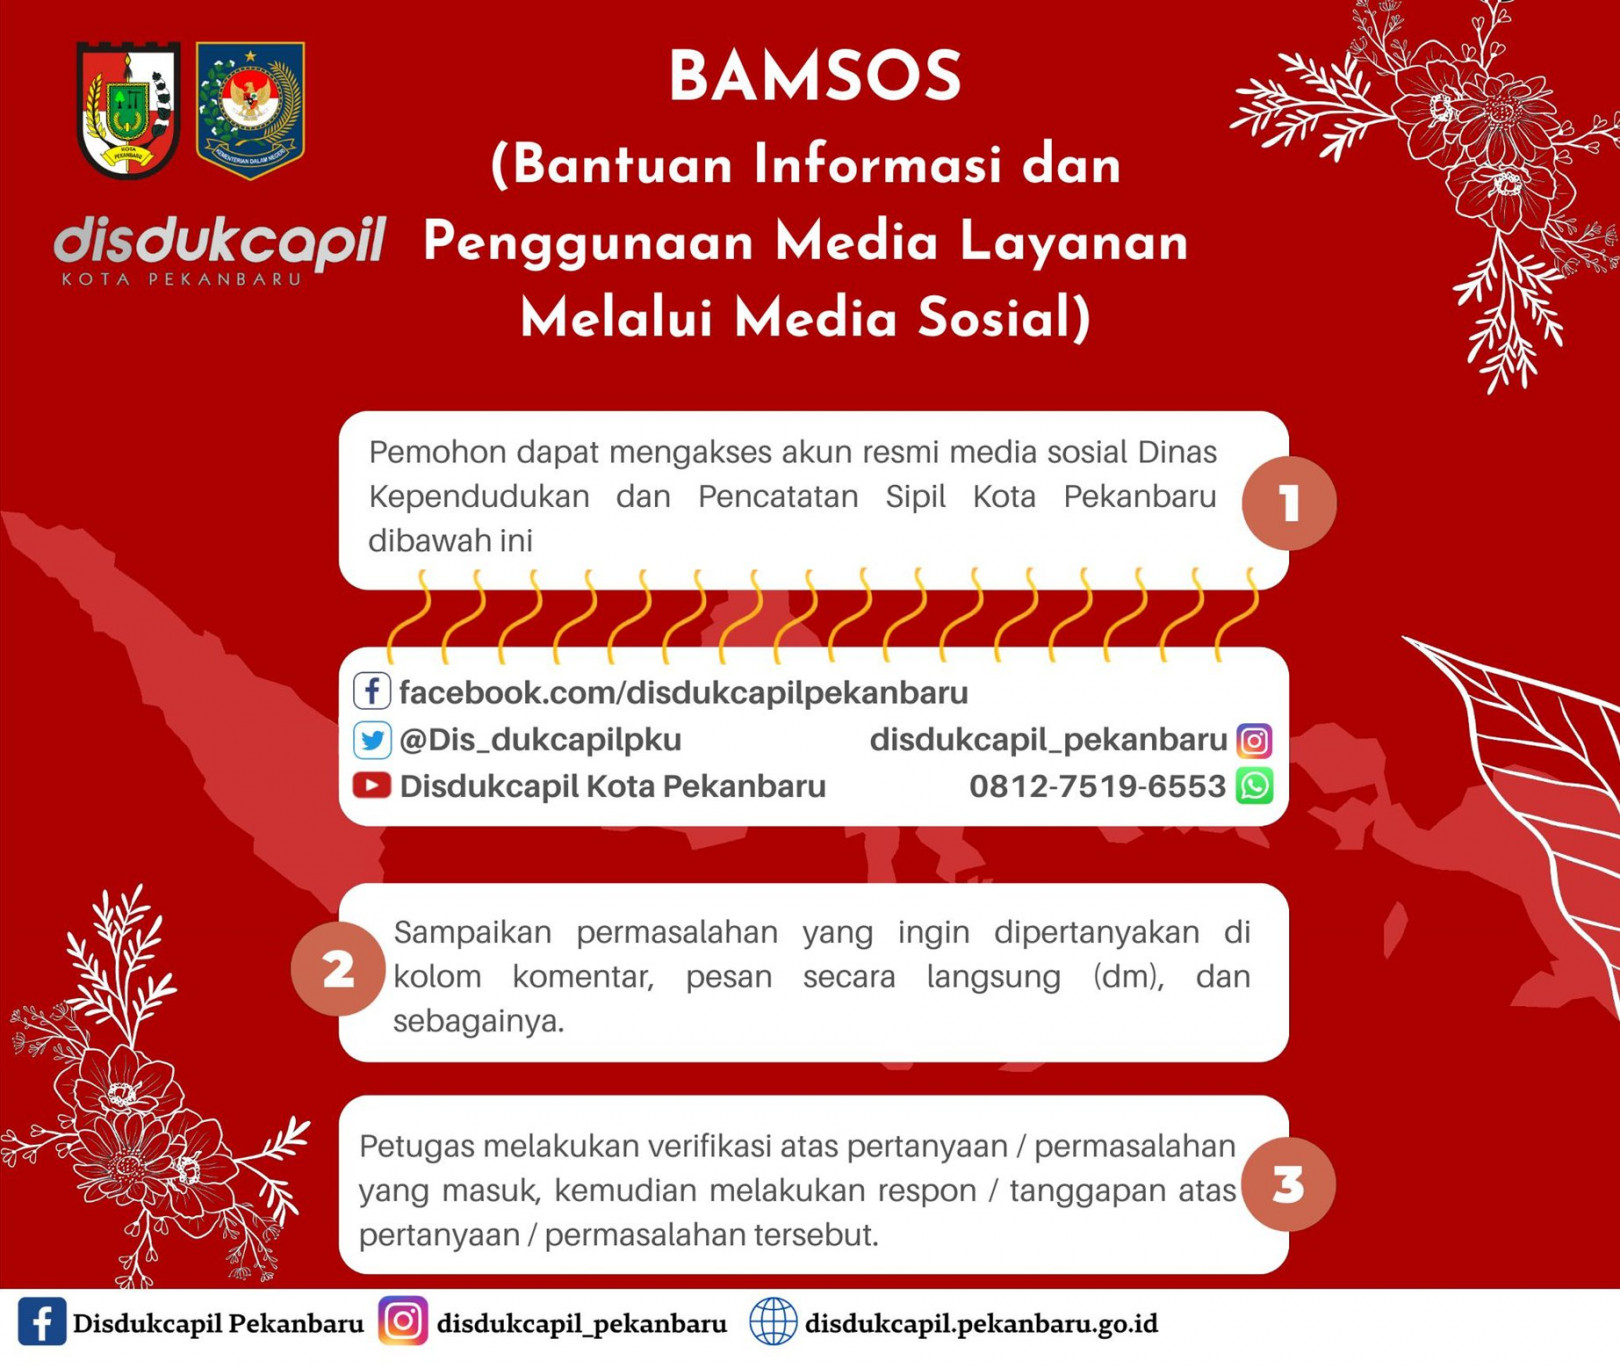 BAMSOS (Pelayanan Bantuan Informasi dan penggunaan Media Layanan Melalui Media Sosial)